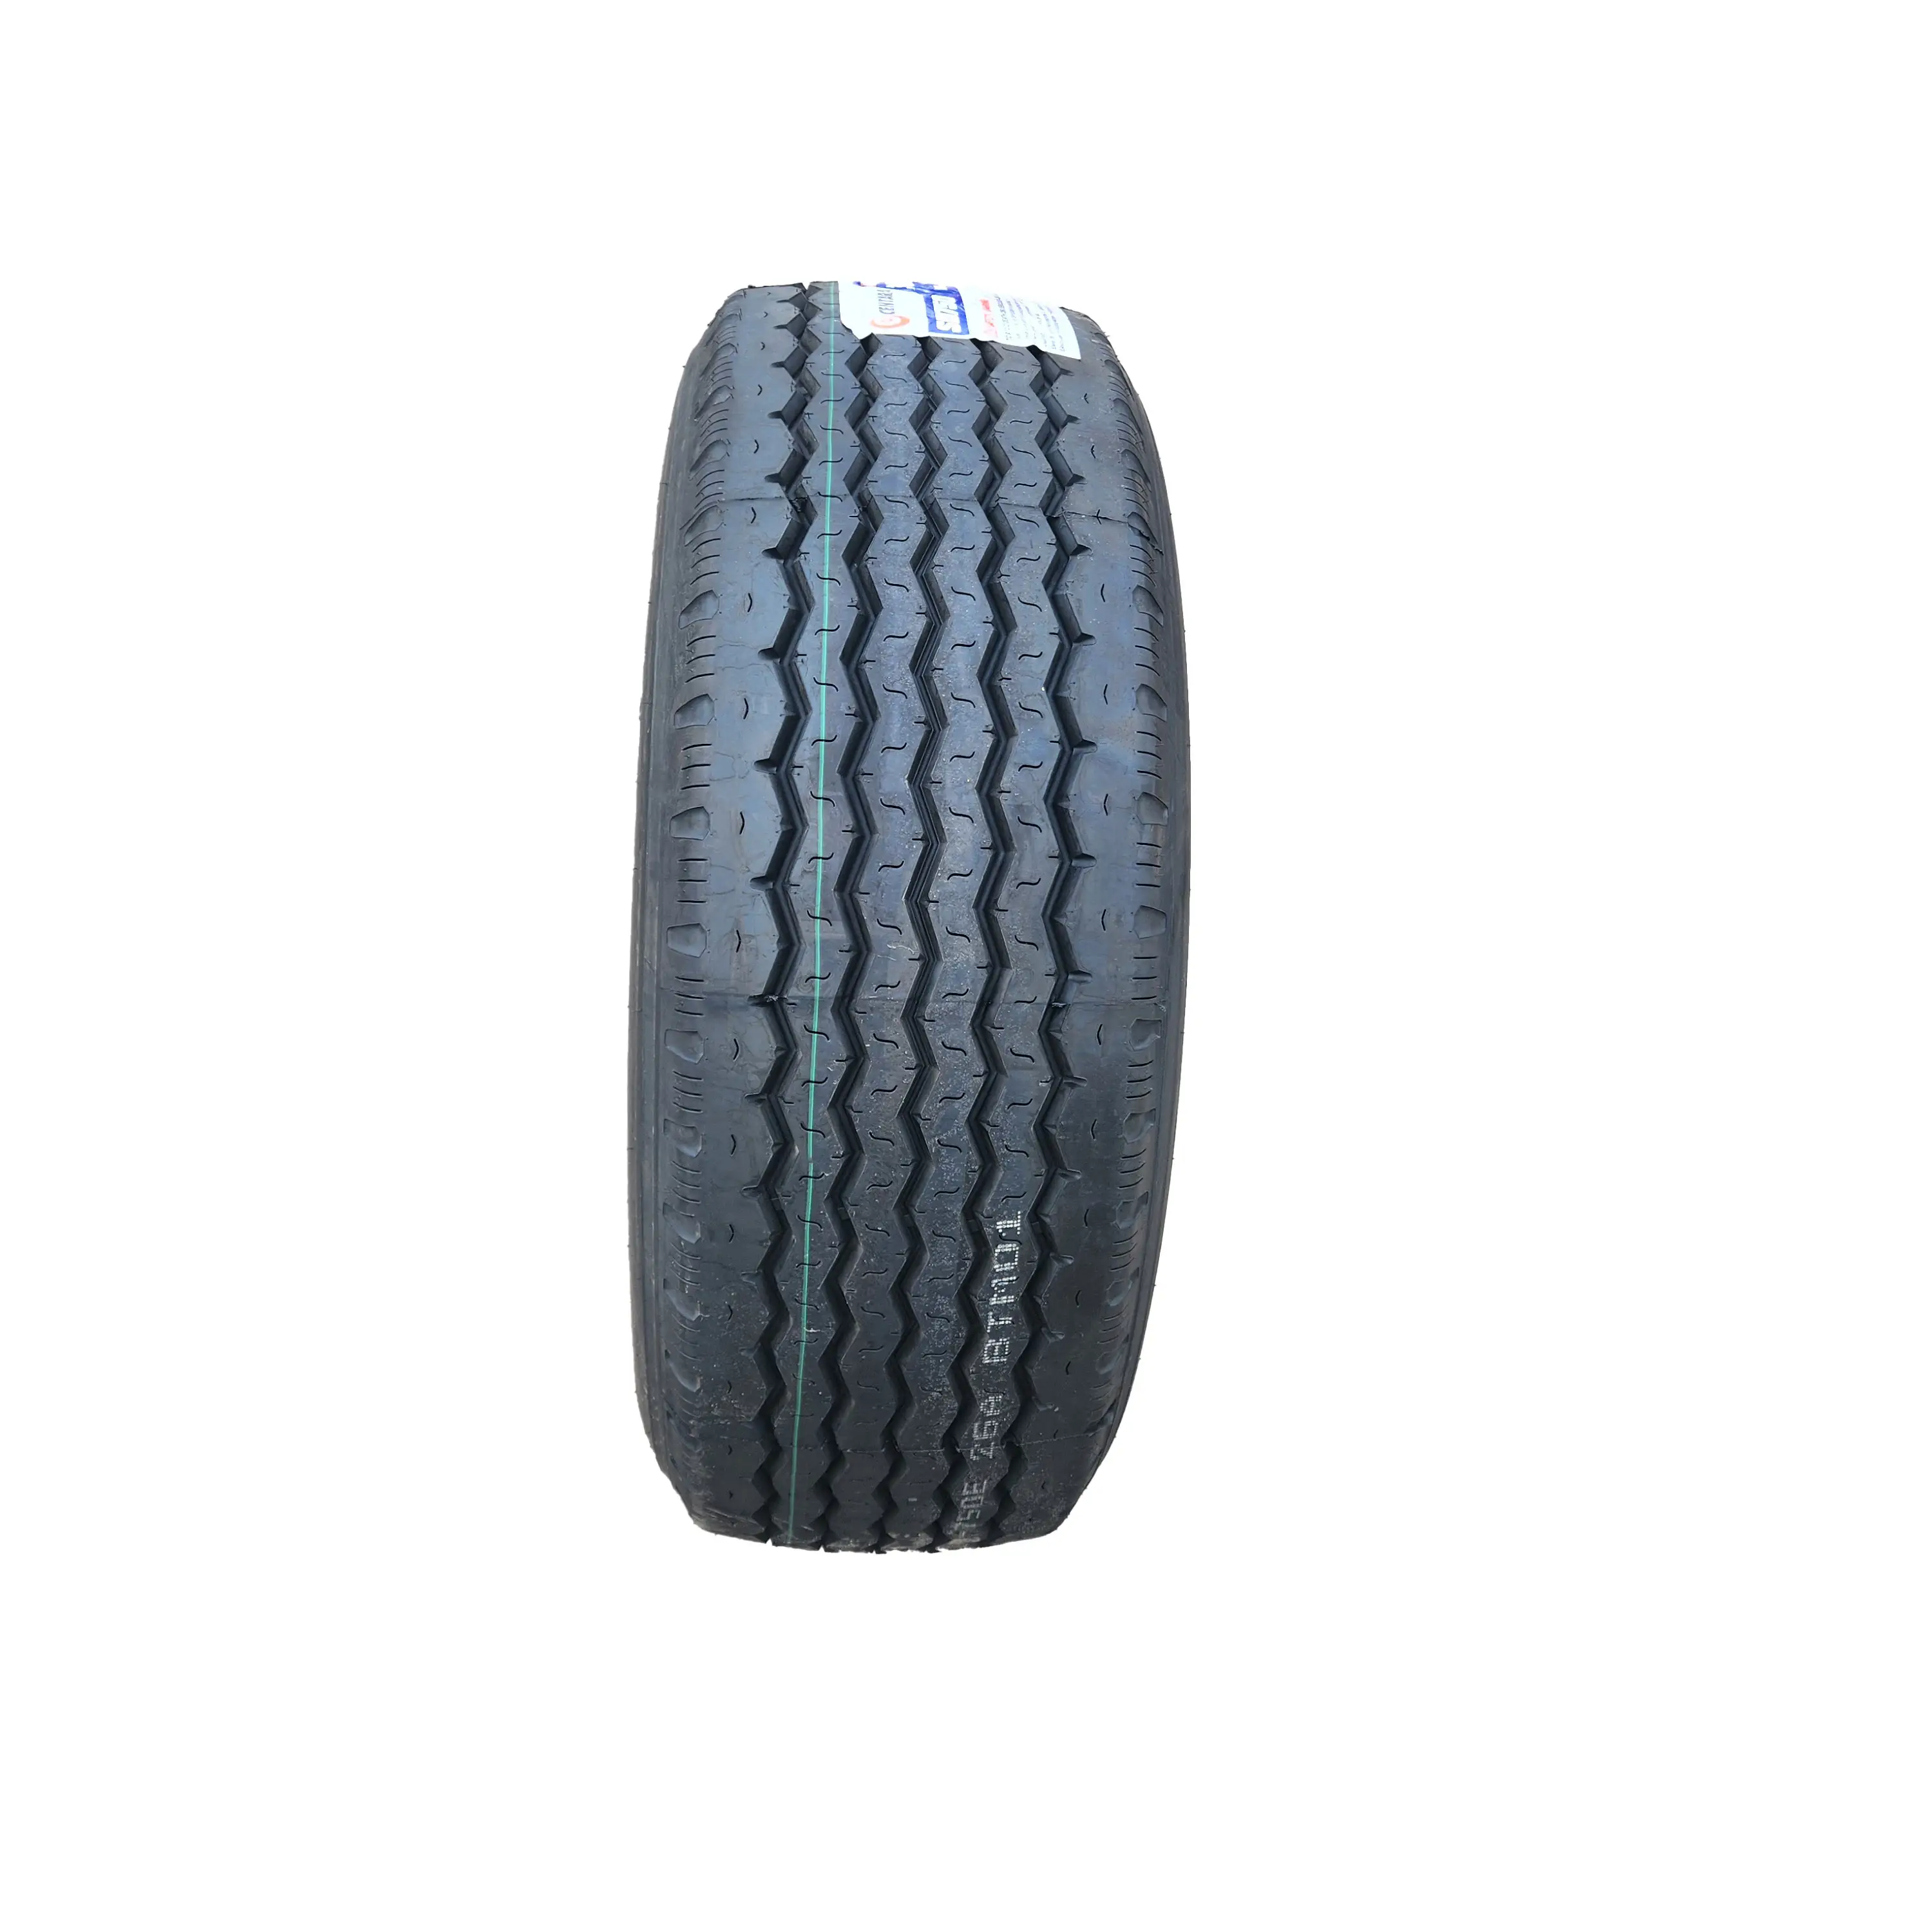 중국 타이어 공장 헤비 듀티 올 스틸 방사형 트럭 타이어 12R22.5 20PR 타이어